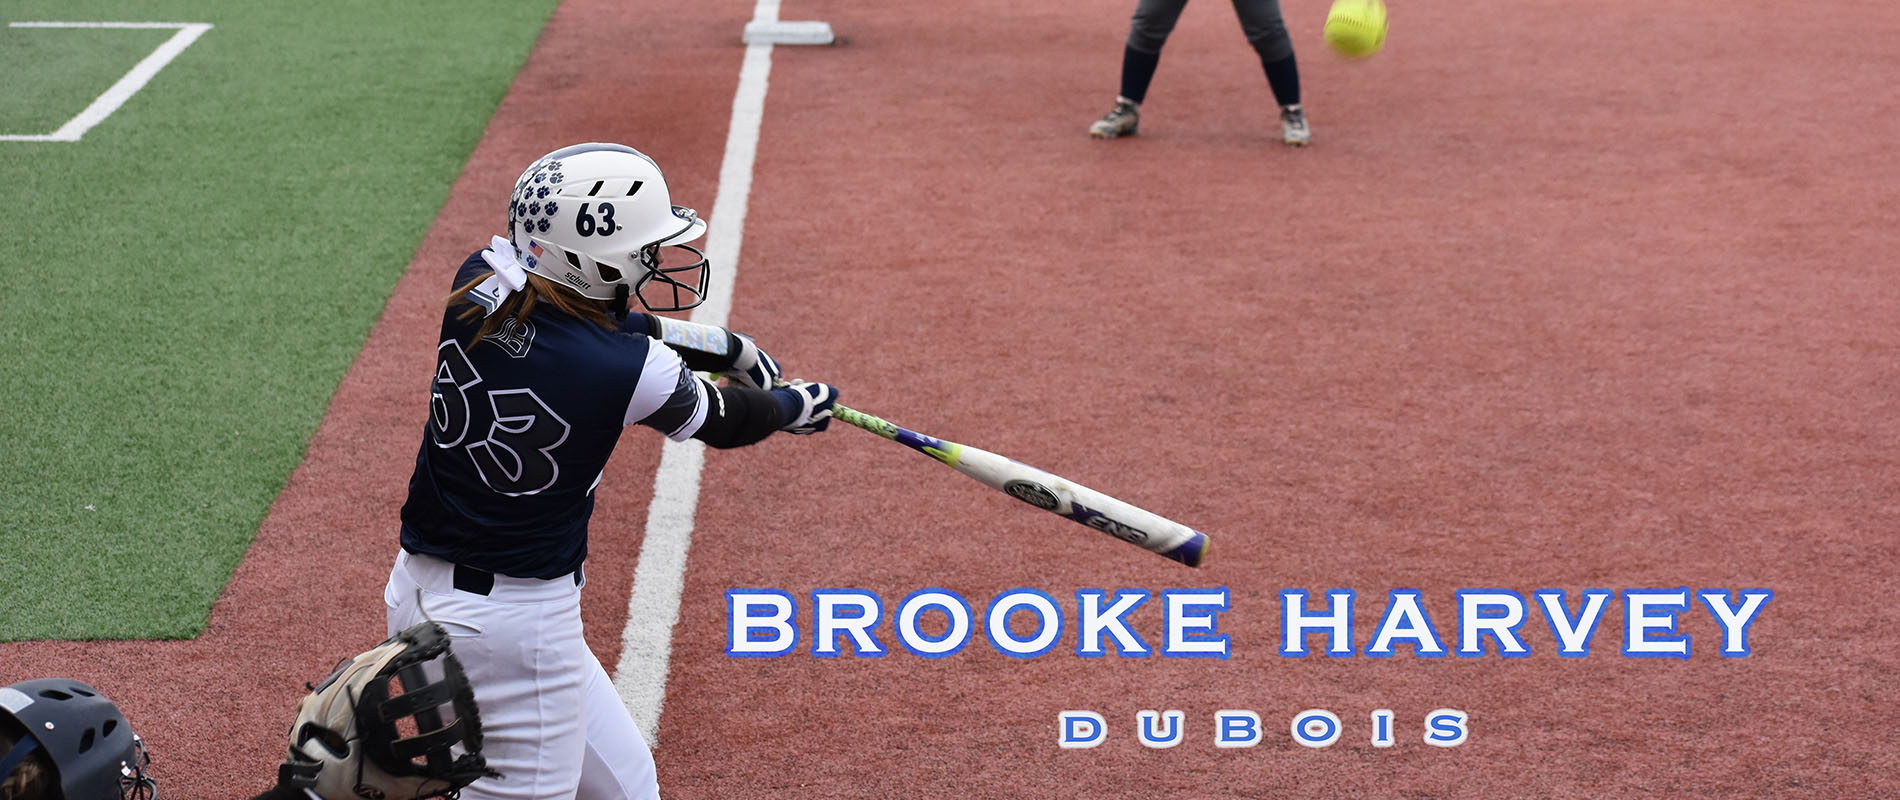 Penn State DuBois' Brooke Harvey.